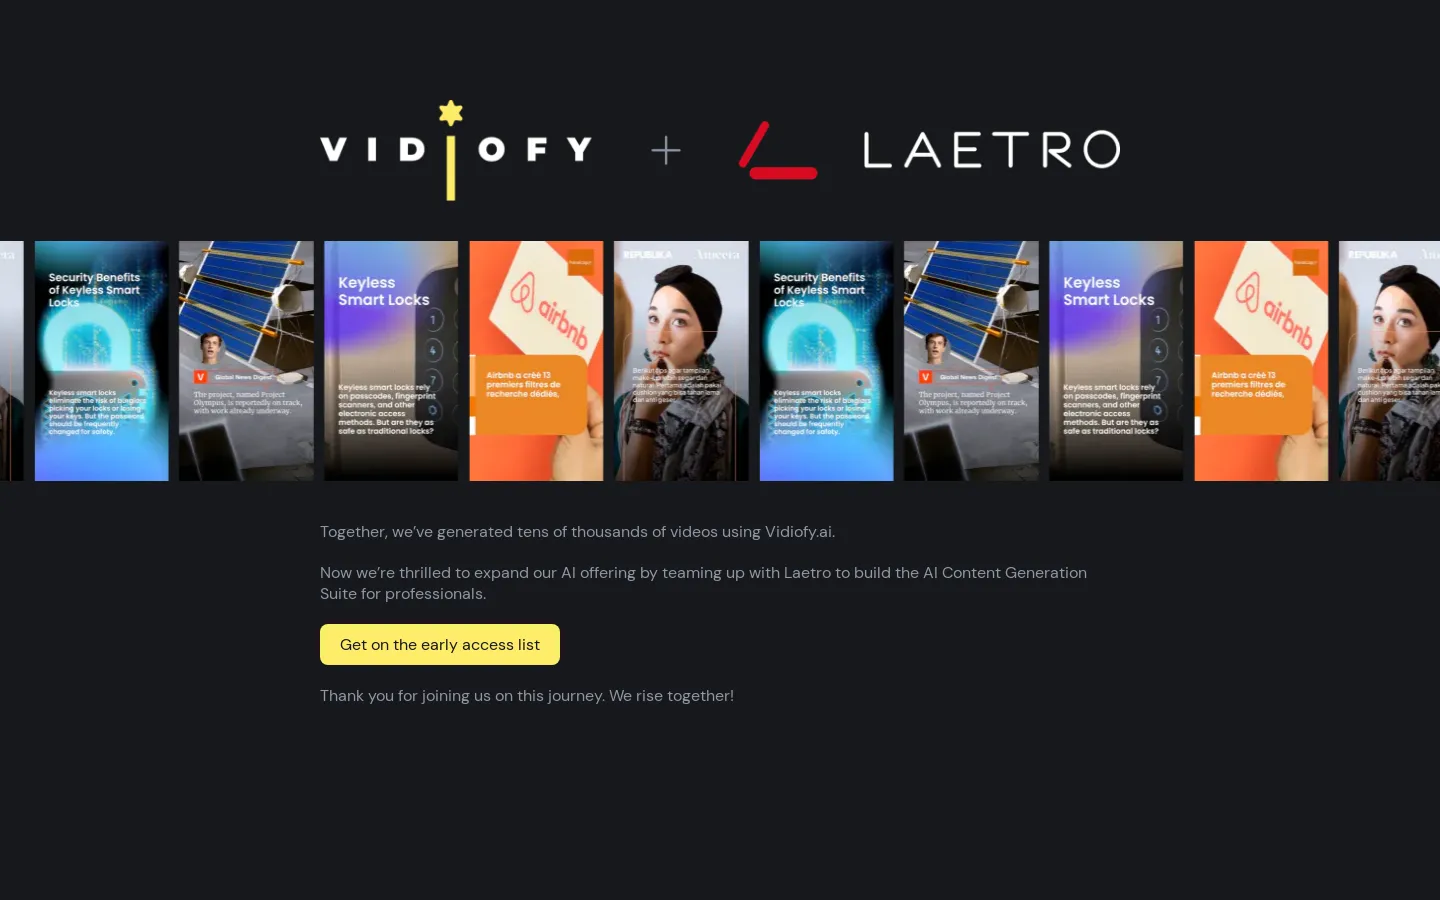 Vidiofy + Laetro: AI Content Generation Suite for Professionals